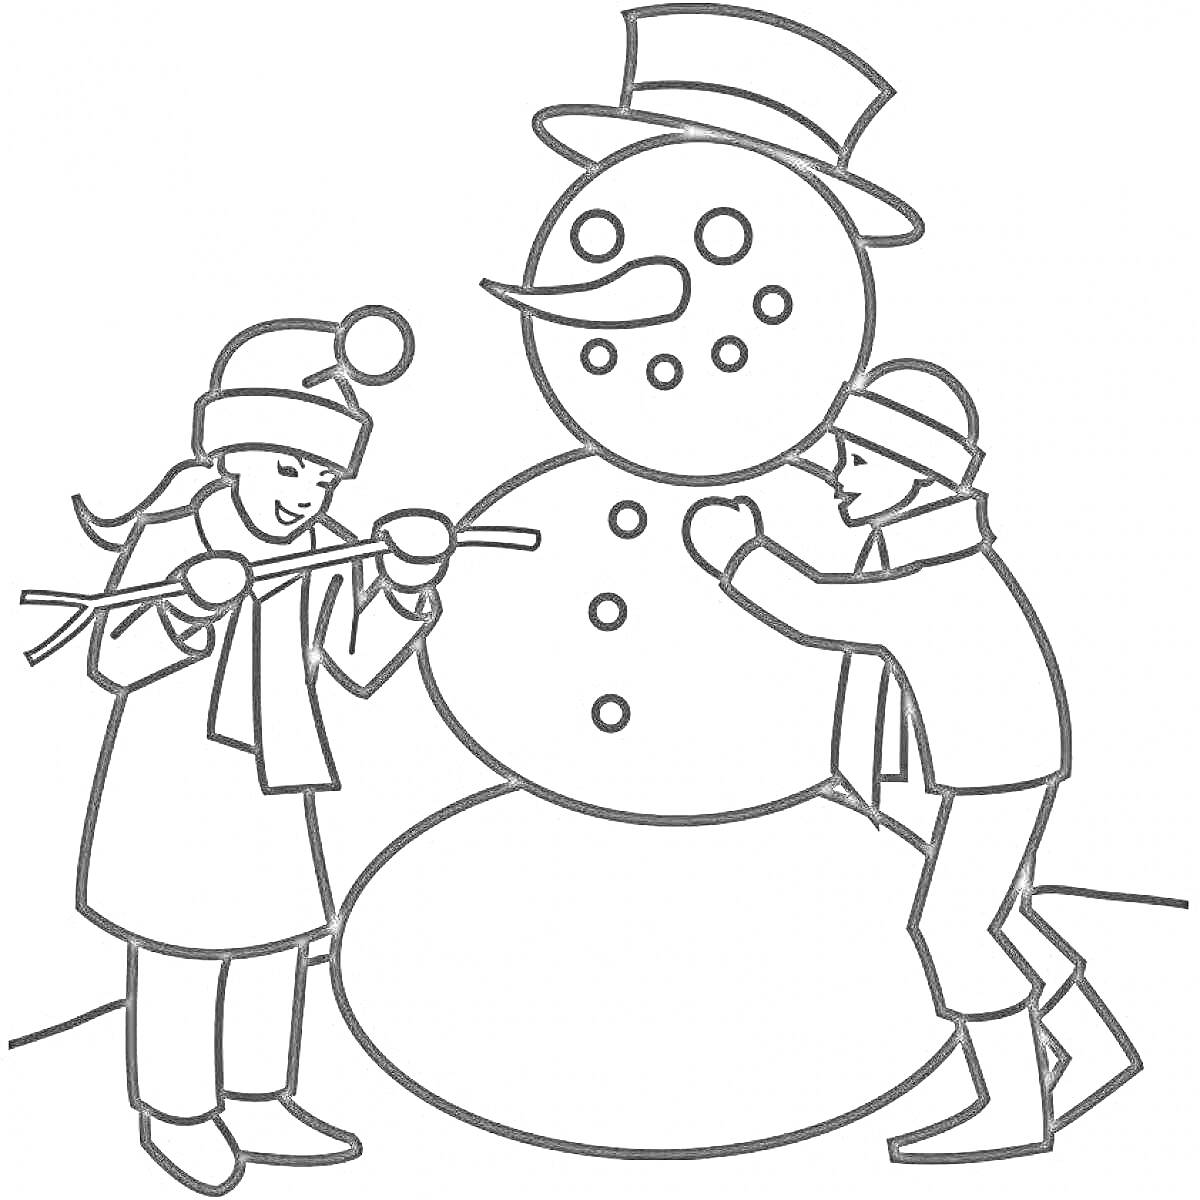 Дети мастерят снежную бабу: девочка надевает руки из веток, мальчик лепит огромный снеговик с пуговицами, носом-морковкой, глазами из углей и шляпой.